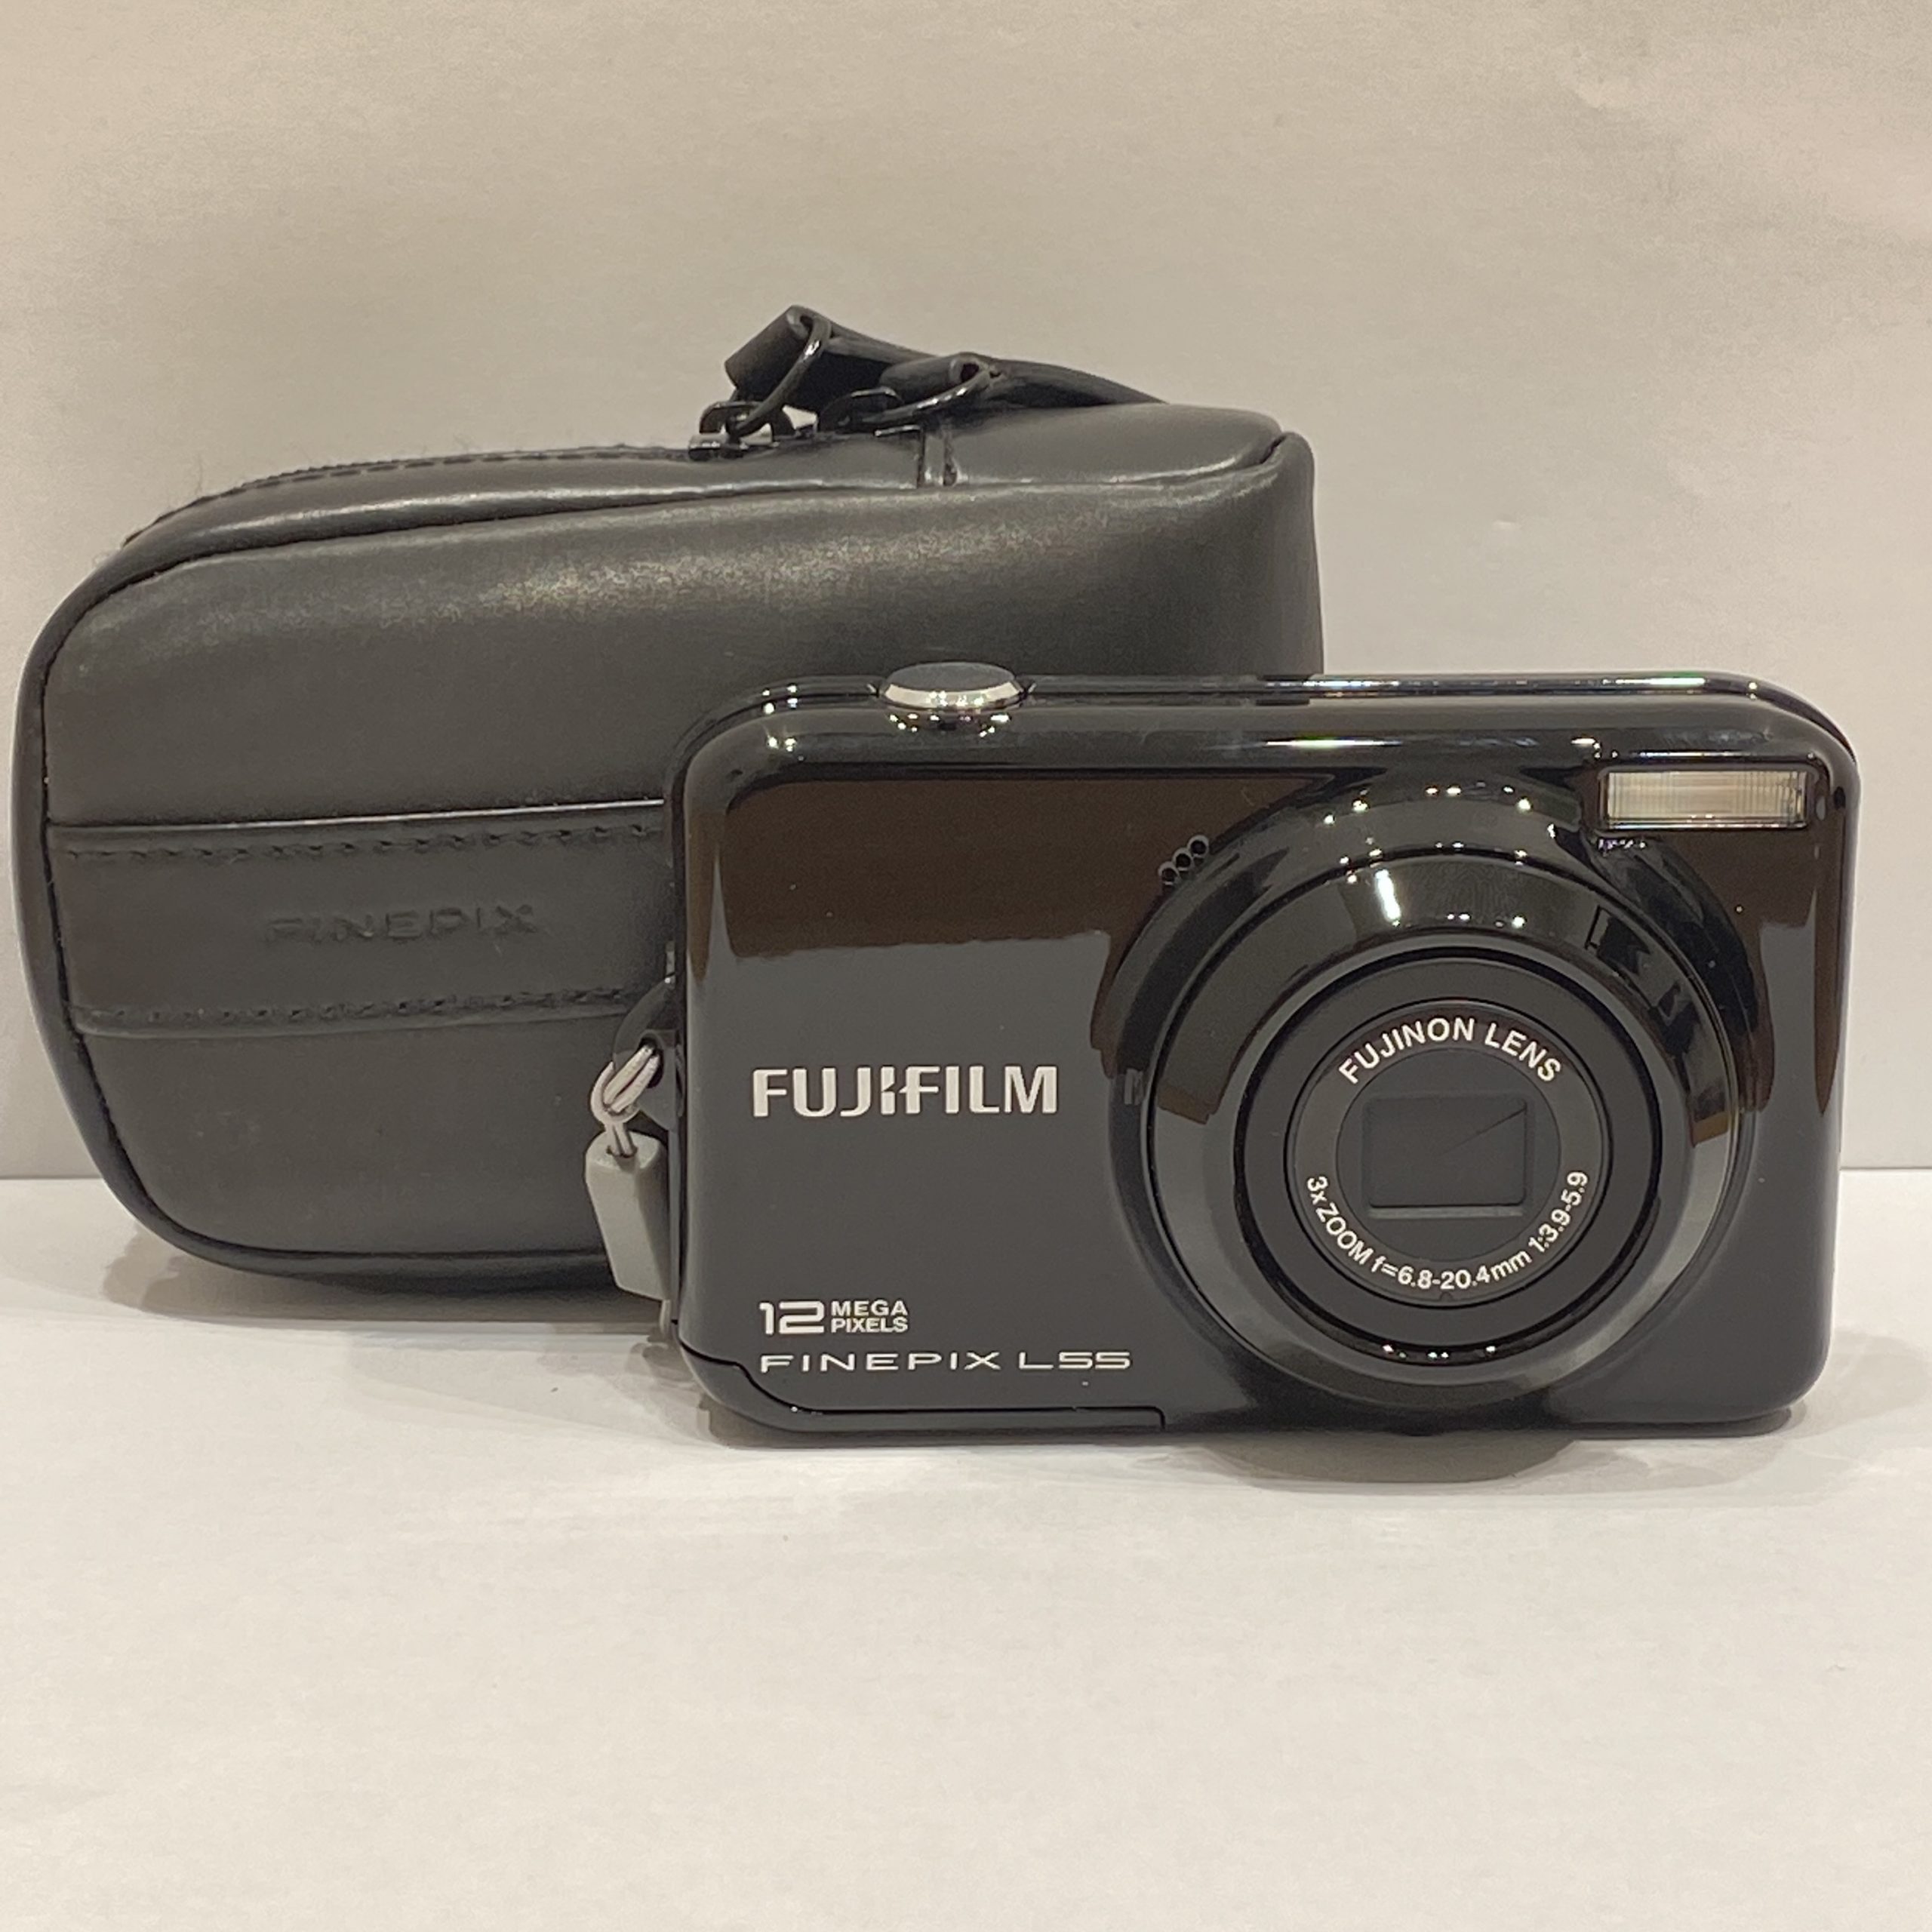 【FUJIFILM/フジフィルム】FINEPIX/ファインピクス L55 コンパクトデジタルカメラ(デジカメ) f=6.8-20.4mm 1:3.9-5.9